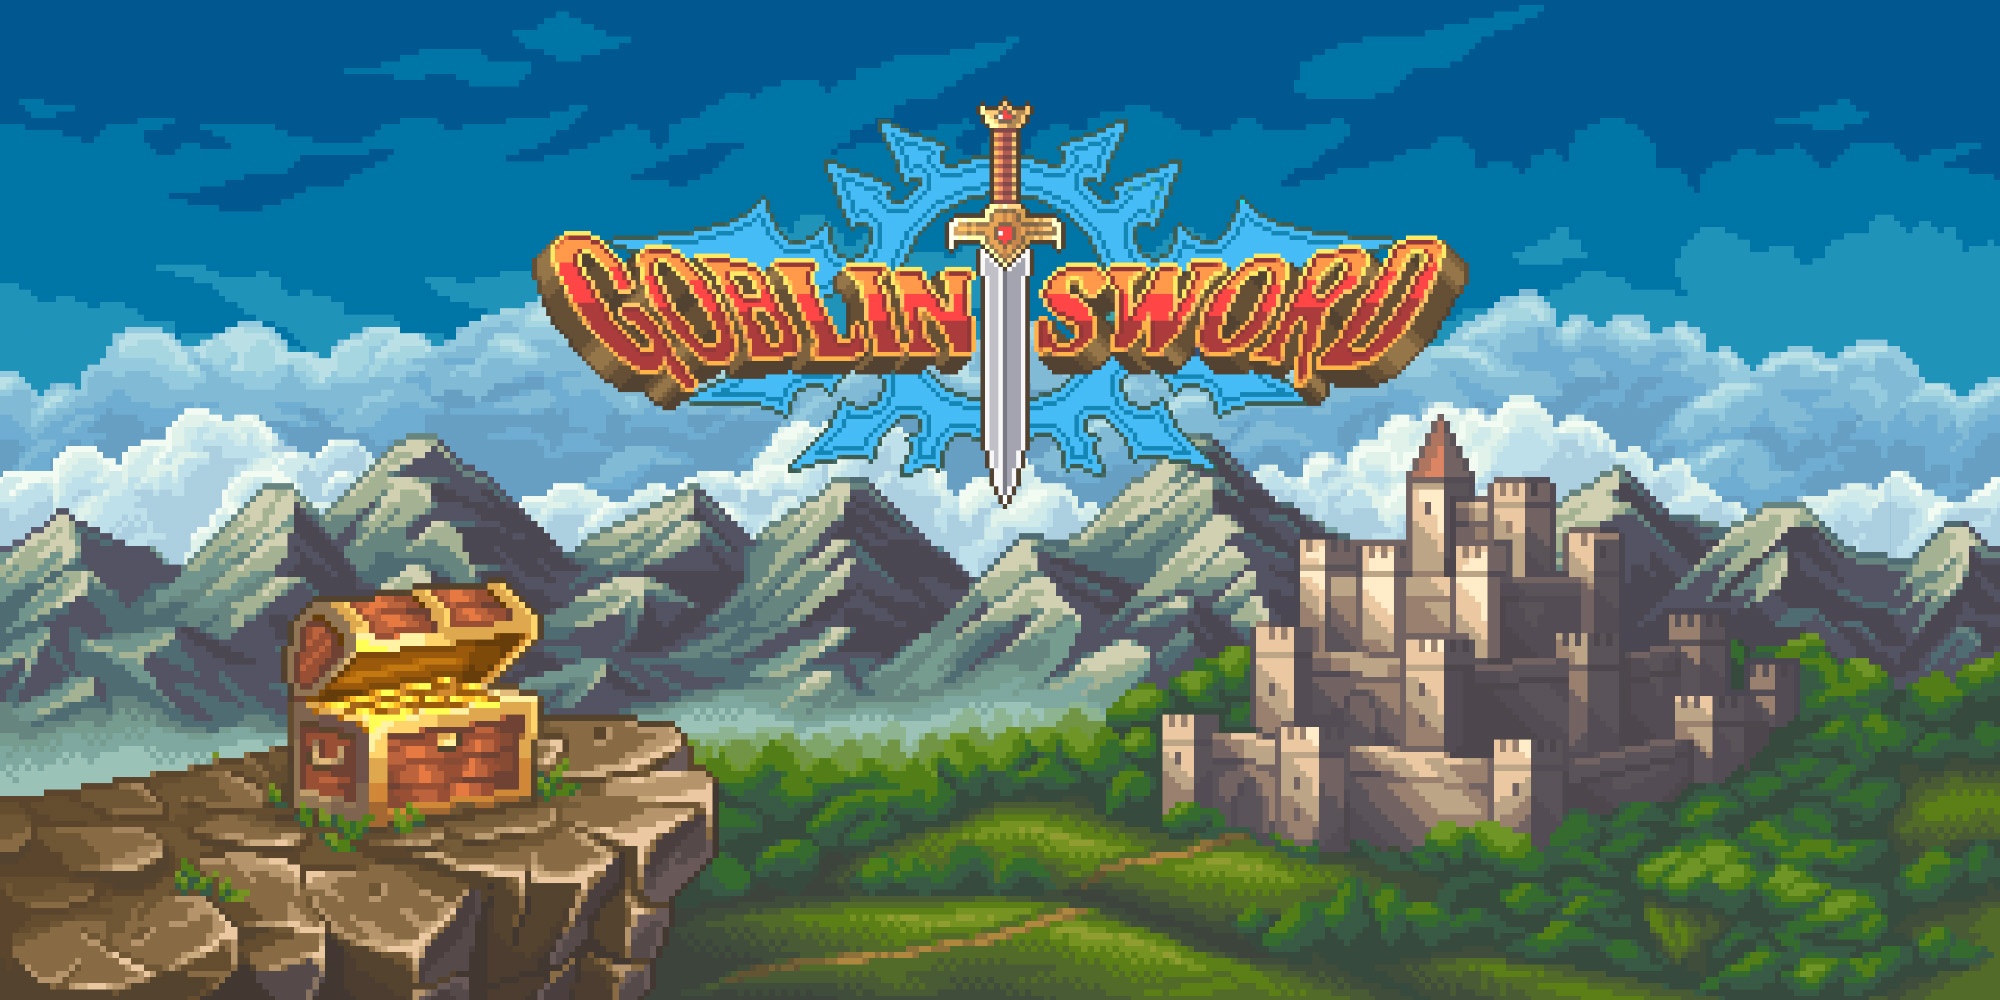 Goblin Sword – Pixels And Goblins